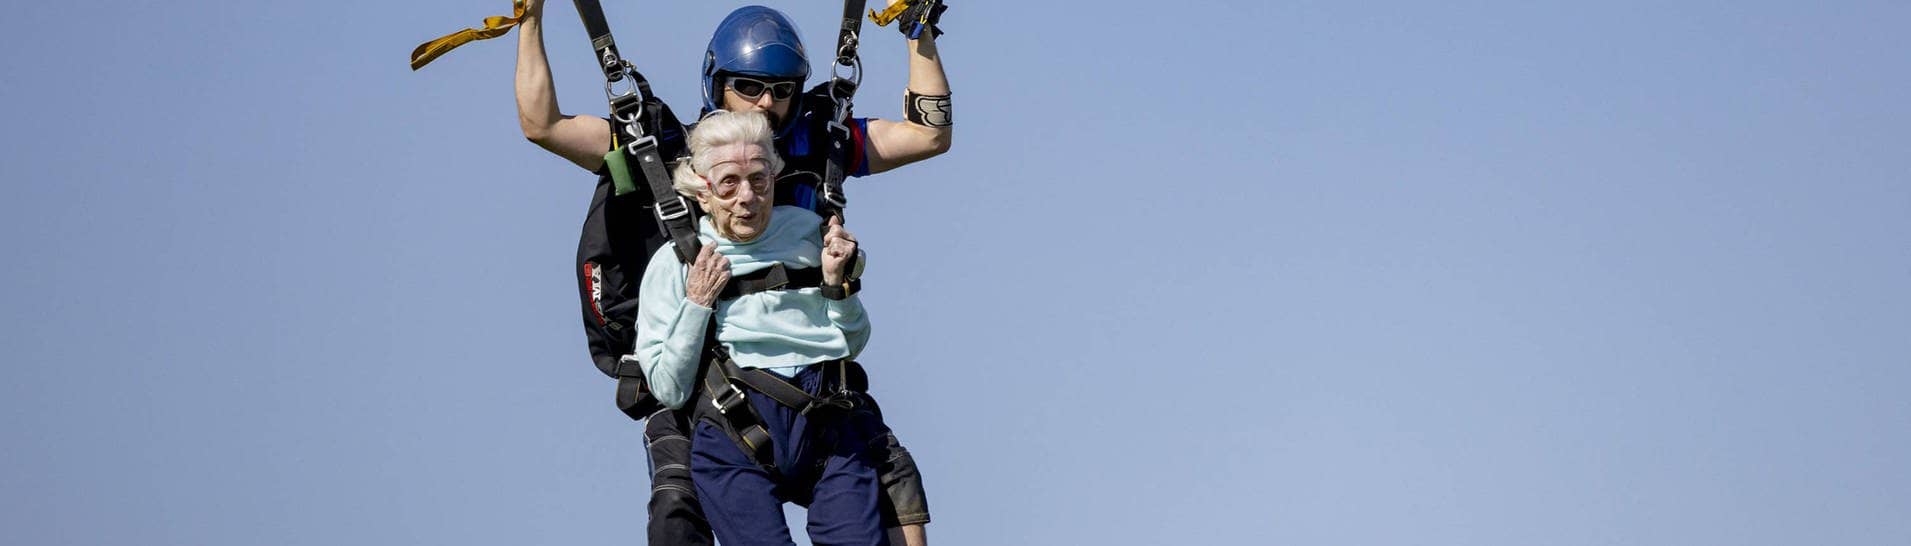 Die 104-jährige Dorothy Hoffner bei ihrem Tandemfallschirmsprung